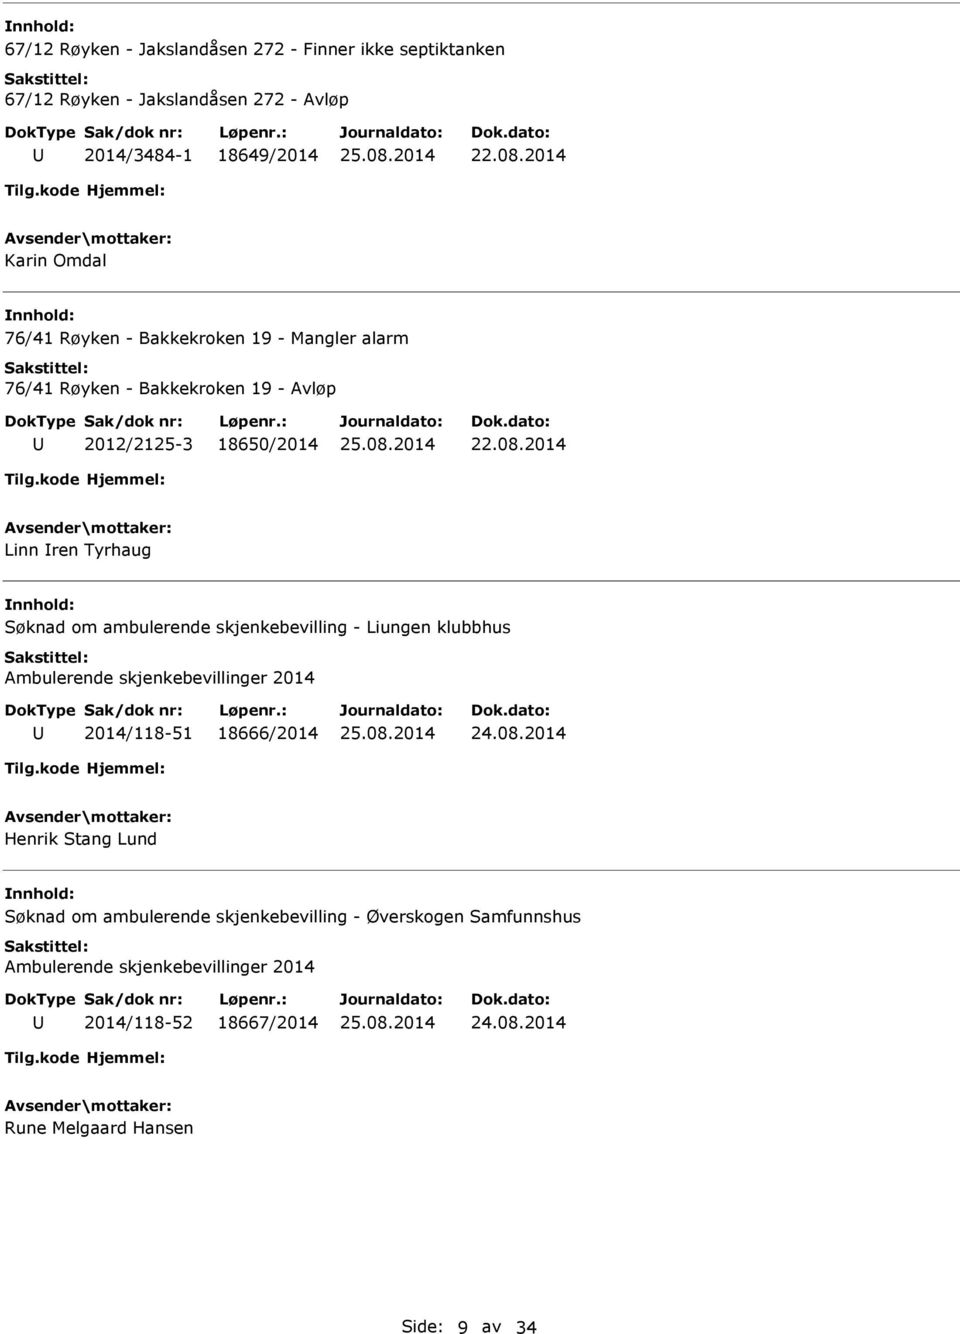 ambulerende skjenkebevilling - Liungen klubbhus Ambulerende skjenkebevillinger 2014 2014/118-51 18666/2014 Henrik Stang Lund Søknad om